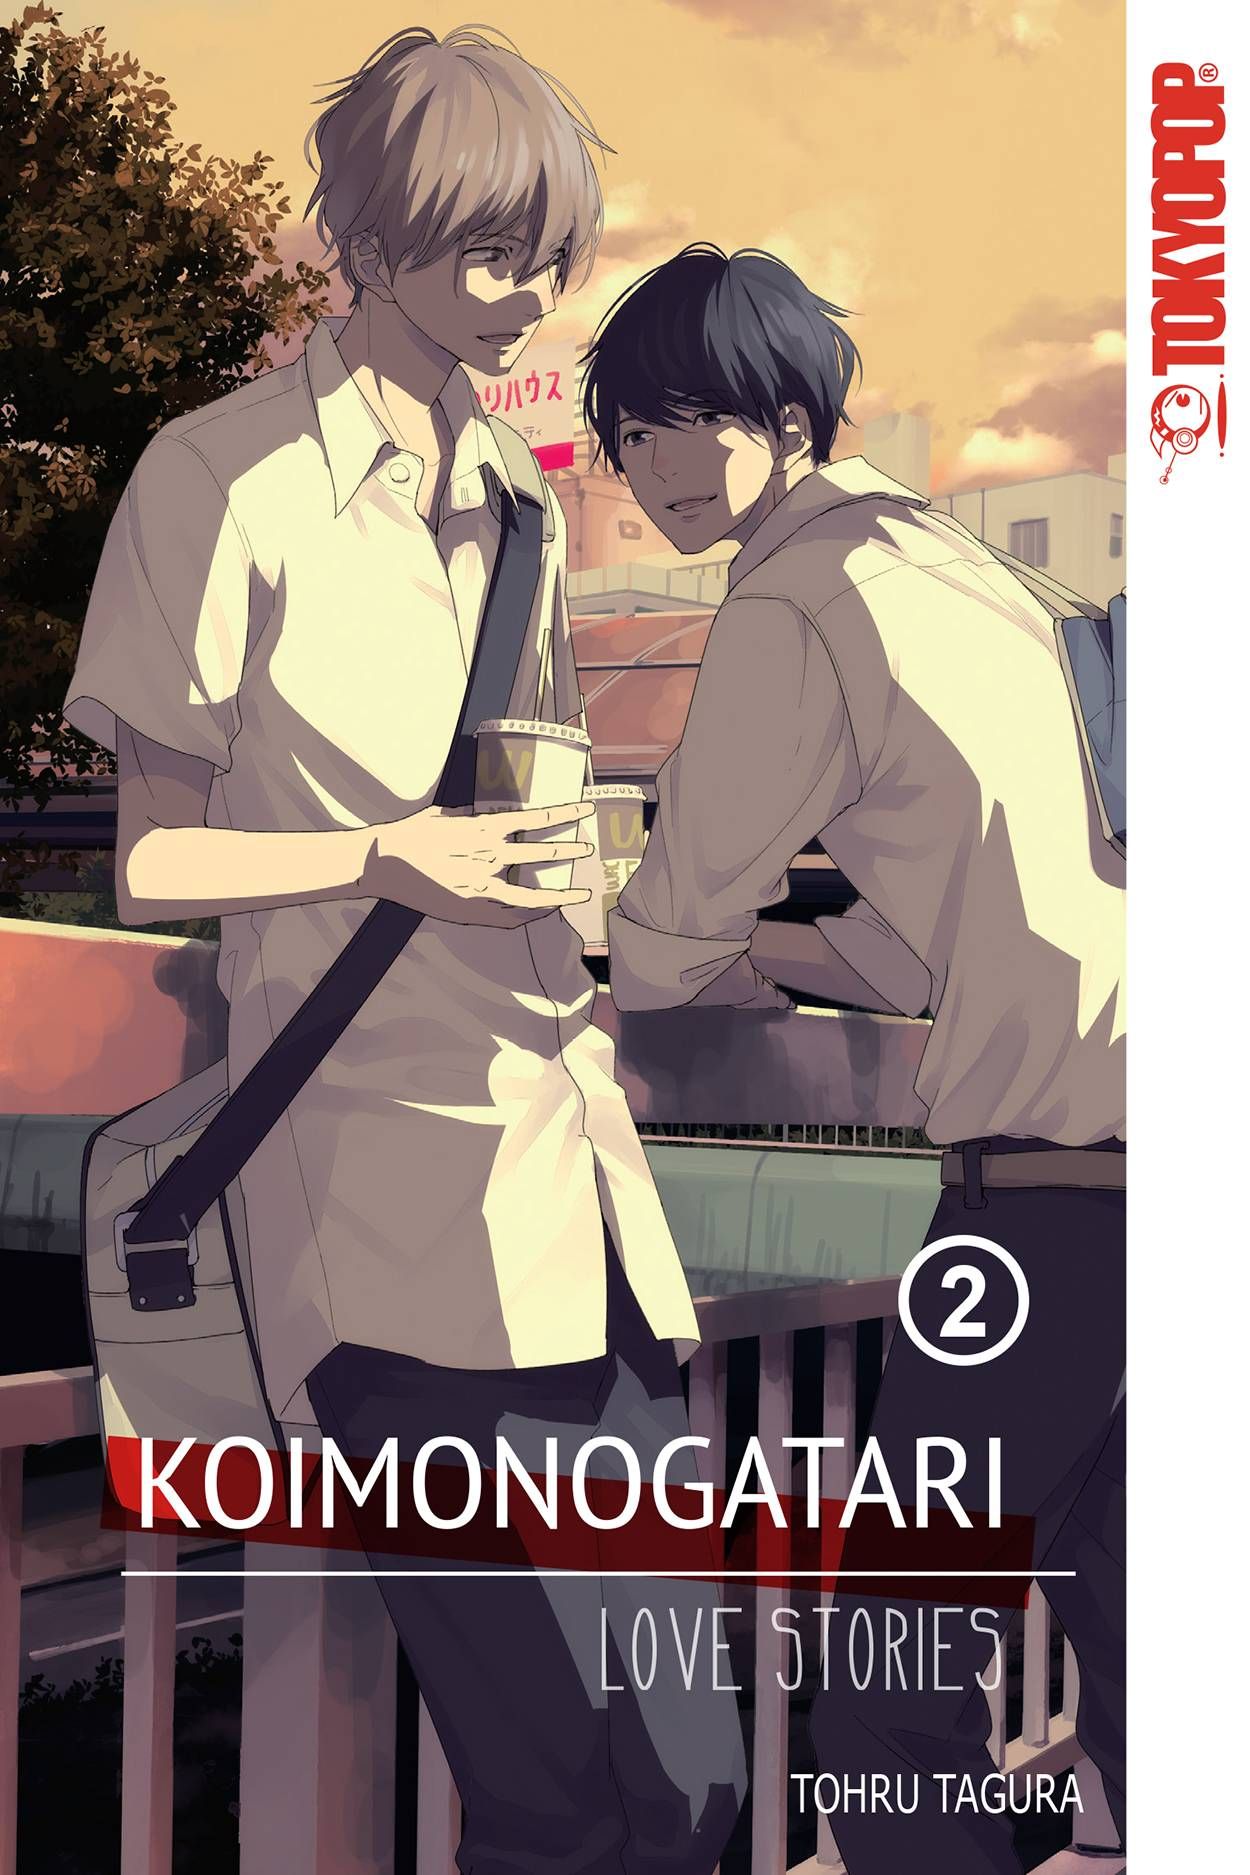 Koimonogatari Love Stories Vol 02